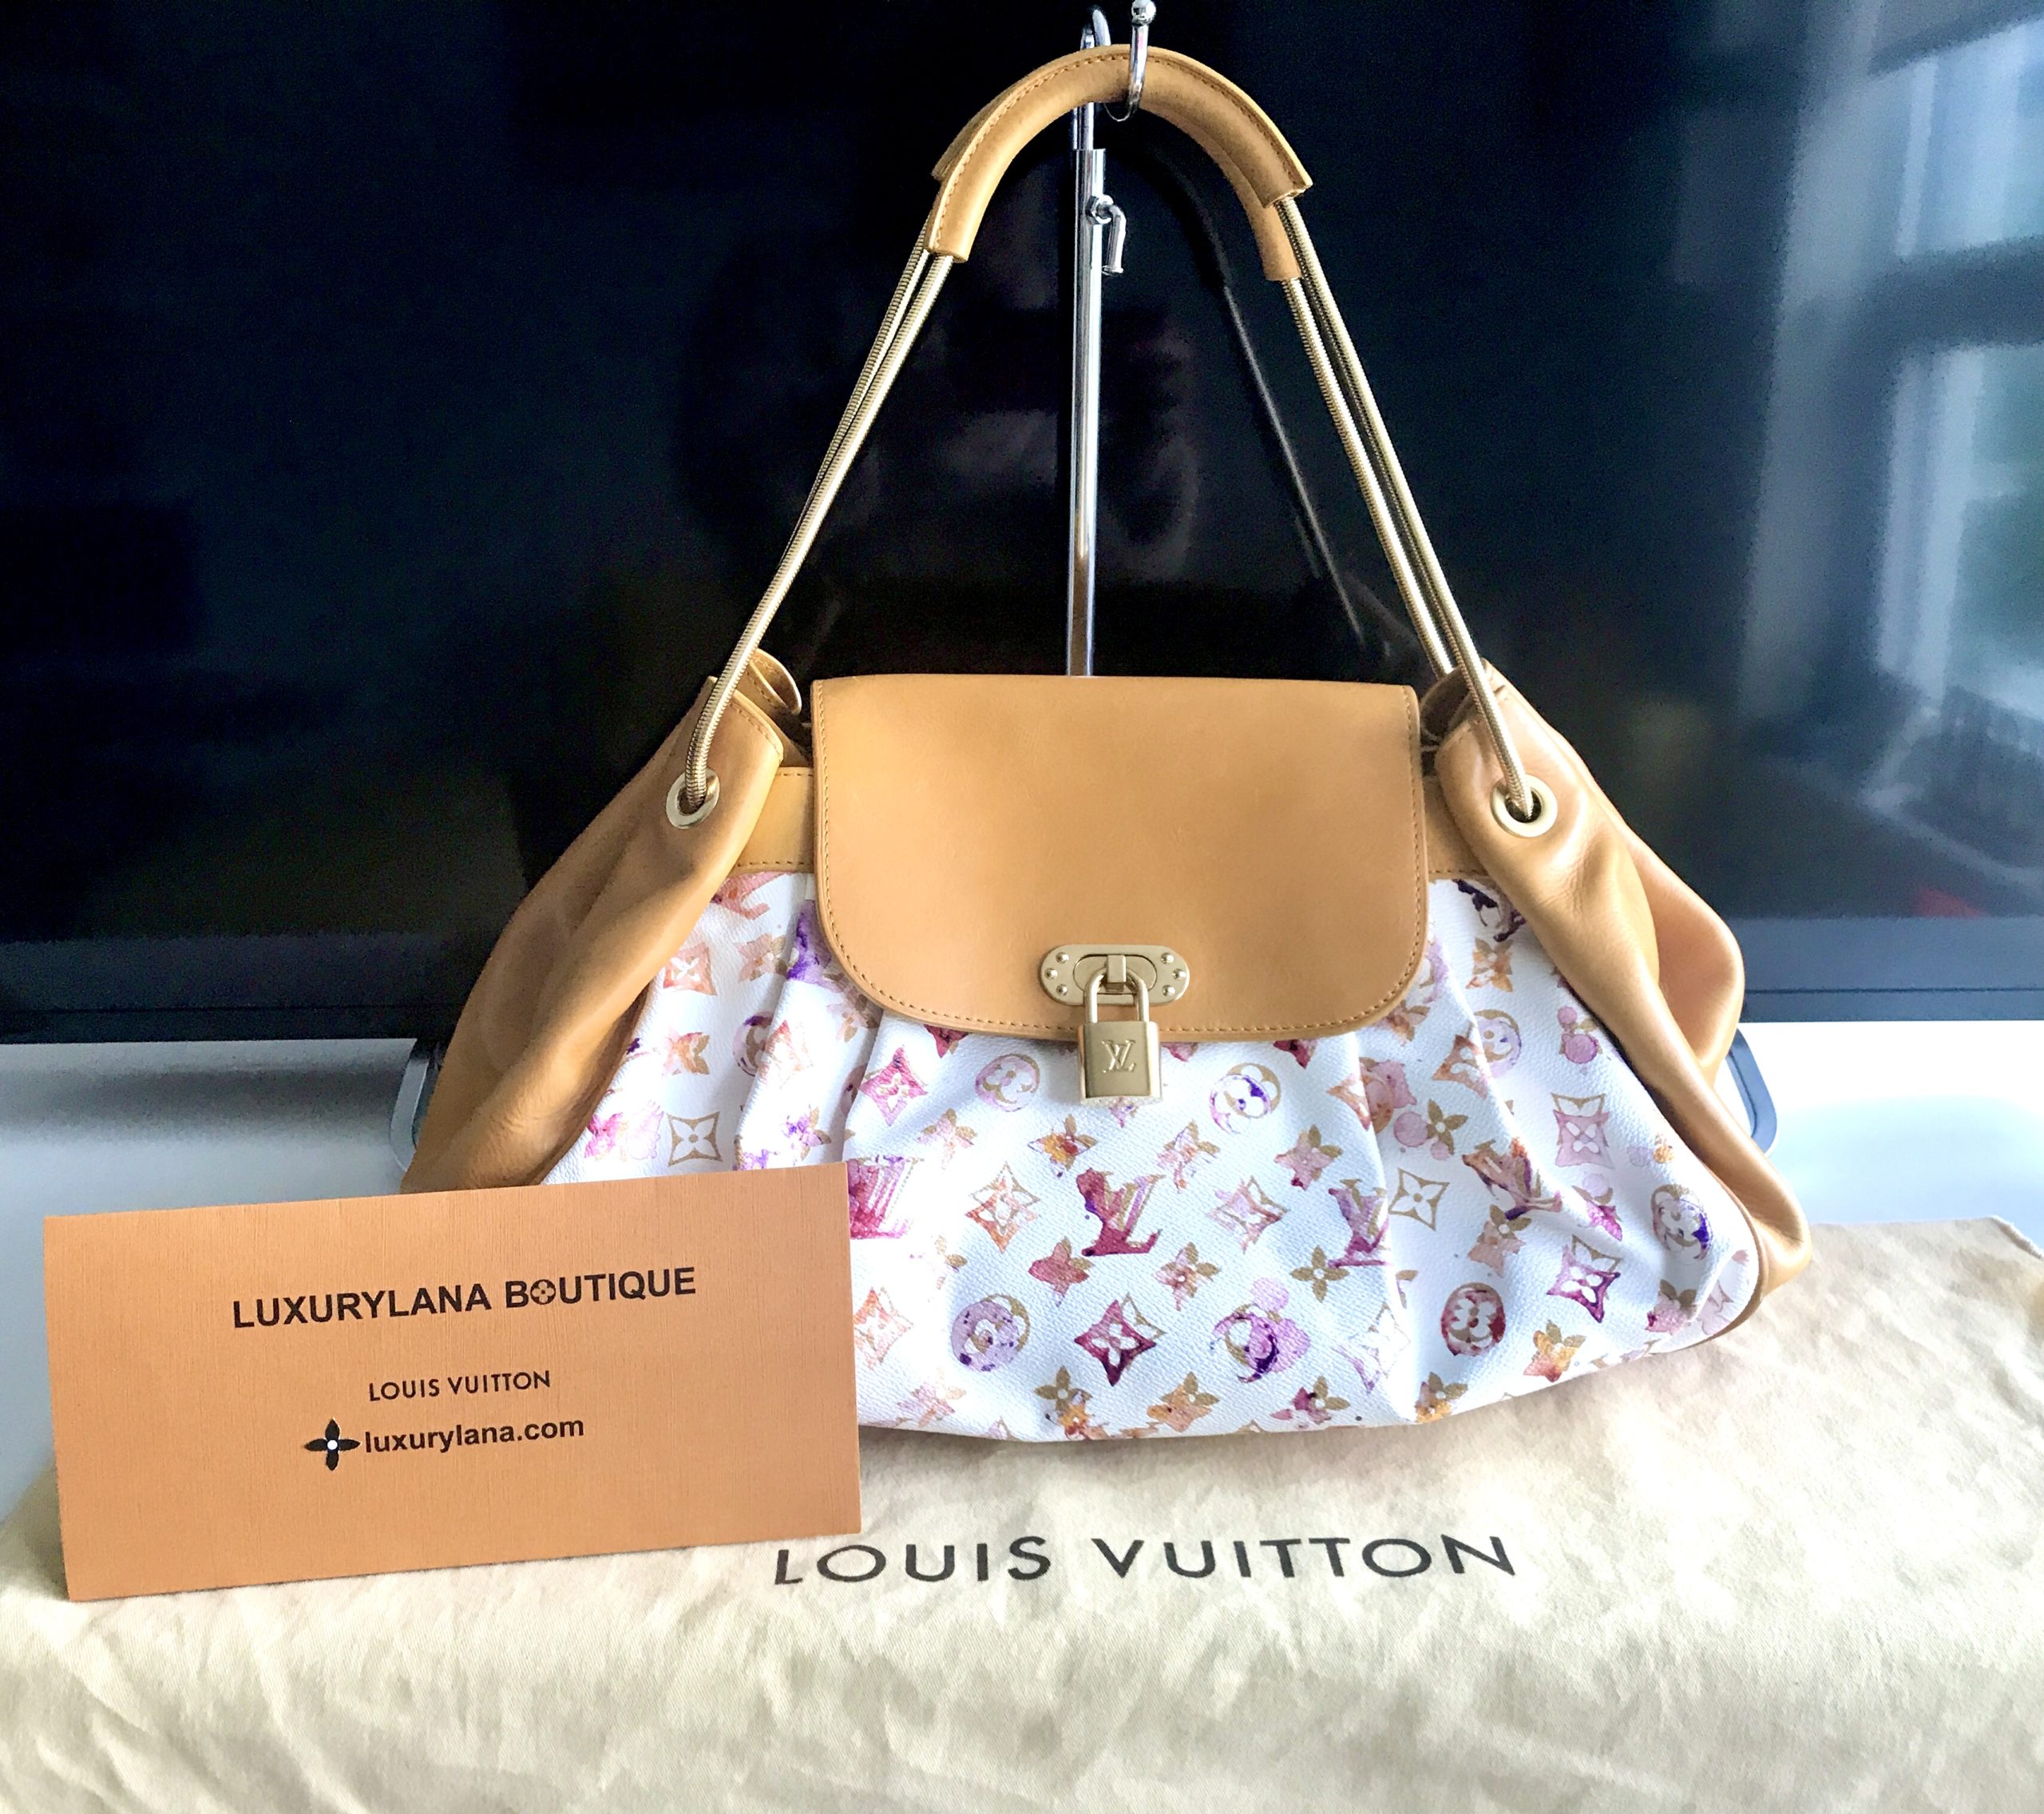 Louis Vuitton Richard Prince Limited Edition Papillon